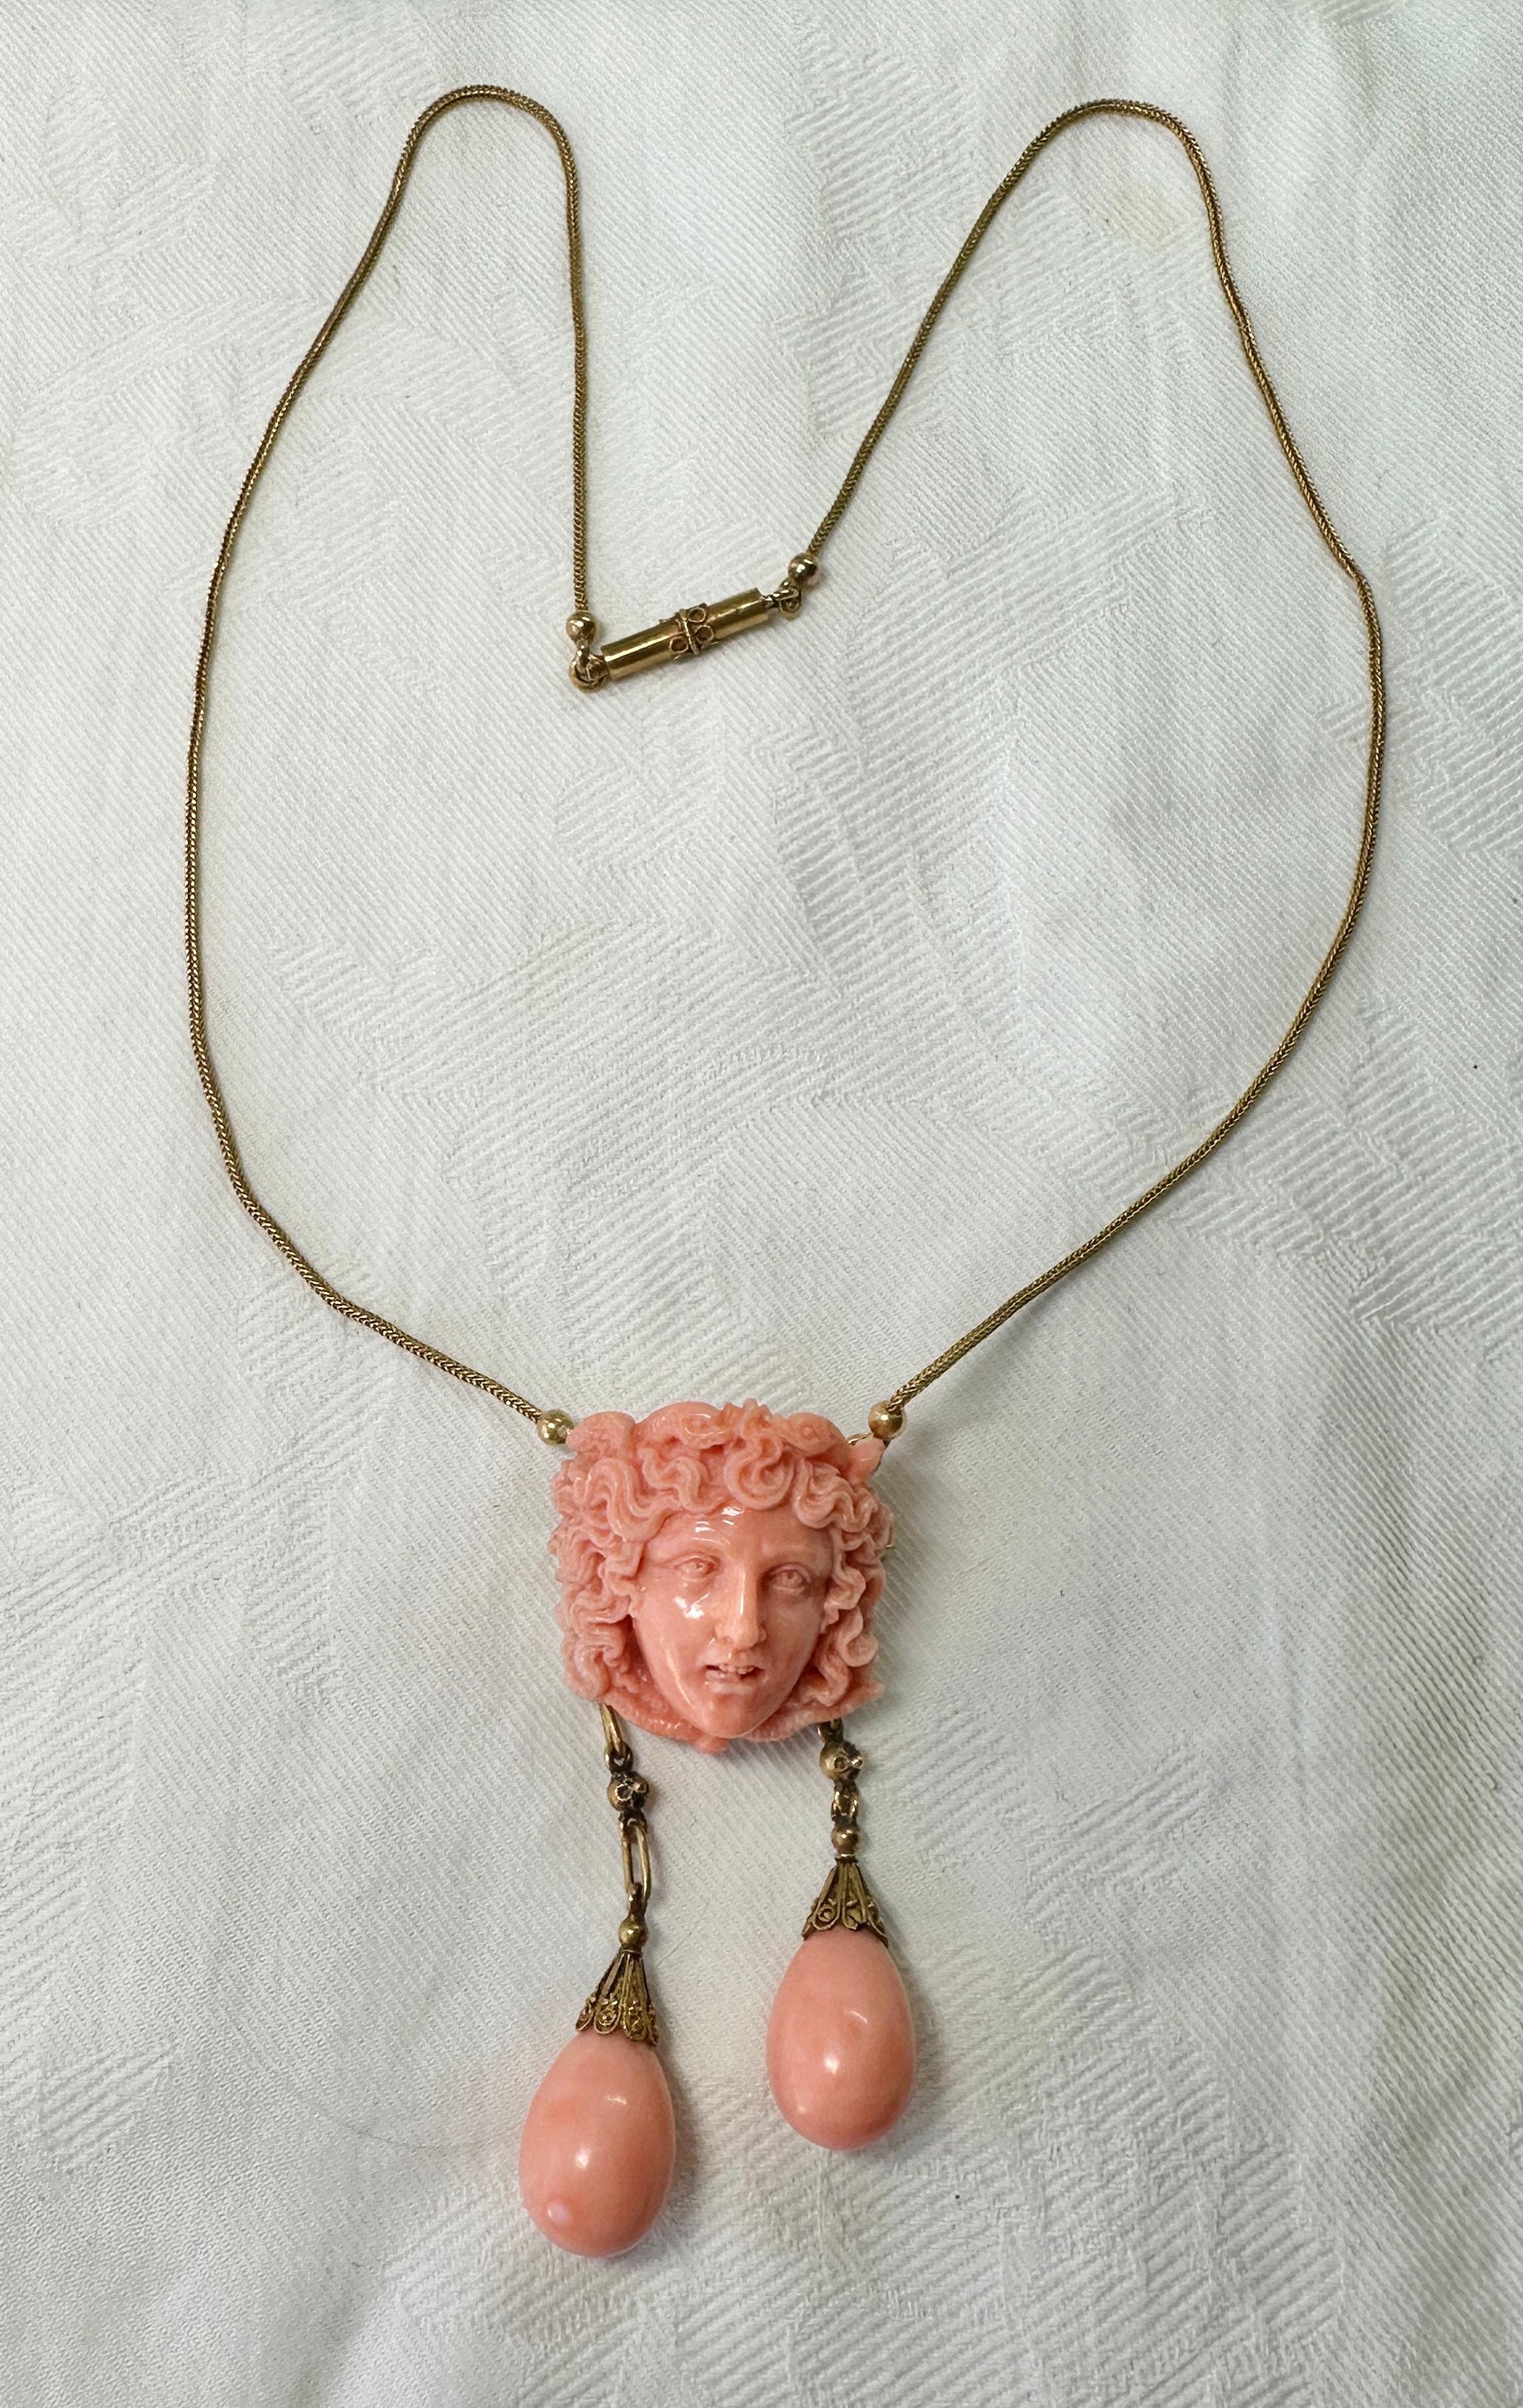 Portrait Cut Medusa Snake Coral Necklace Antique Etruscan Victorian 14 Karat Gold Neoclassic For Sale